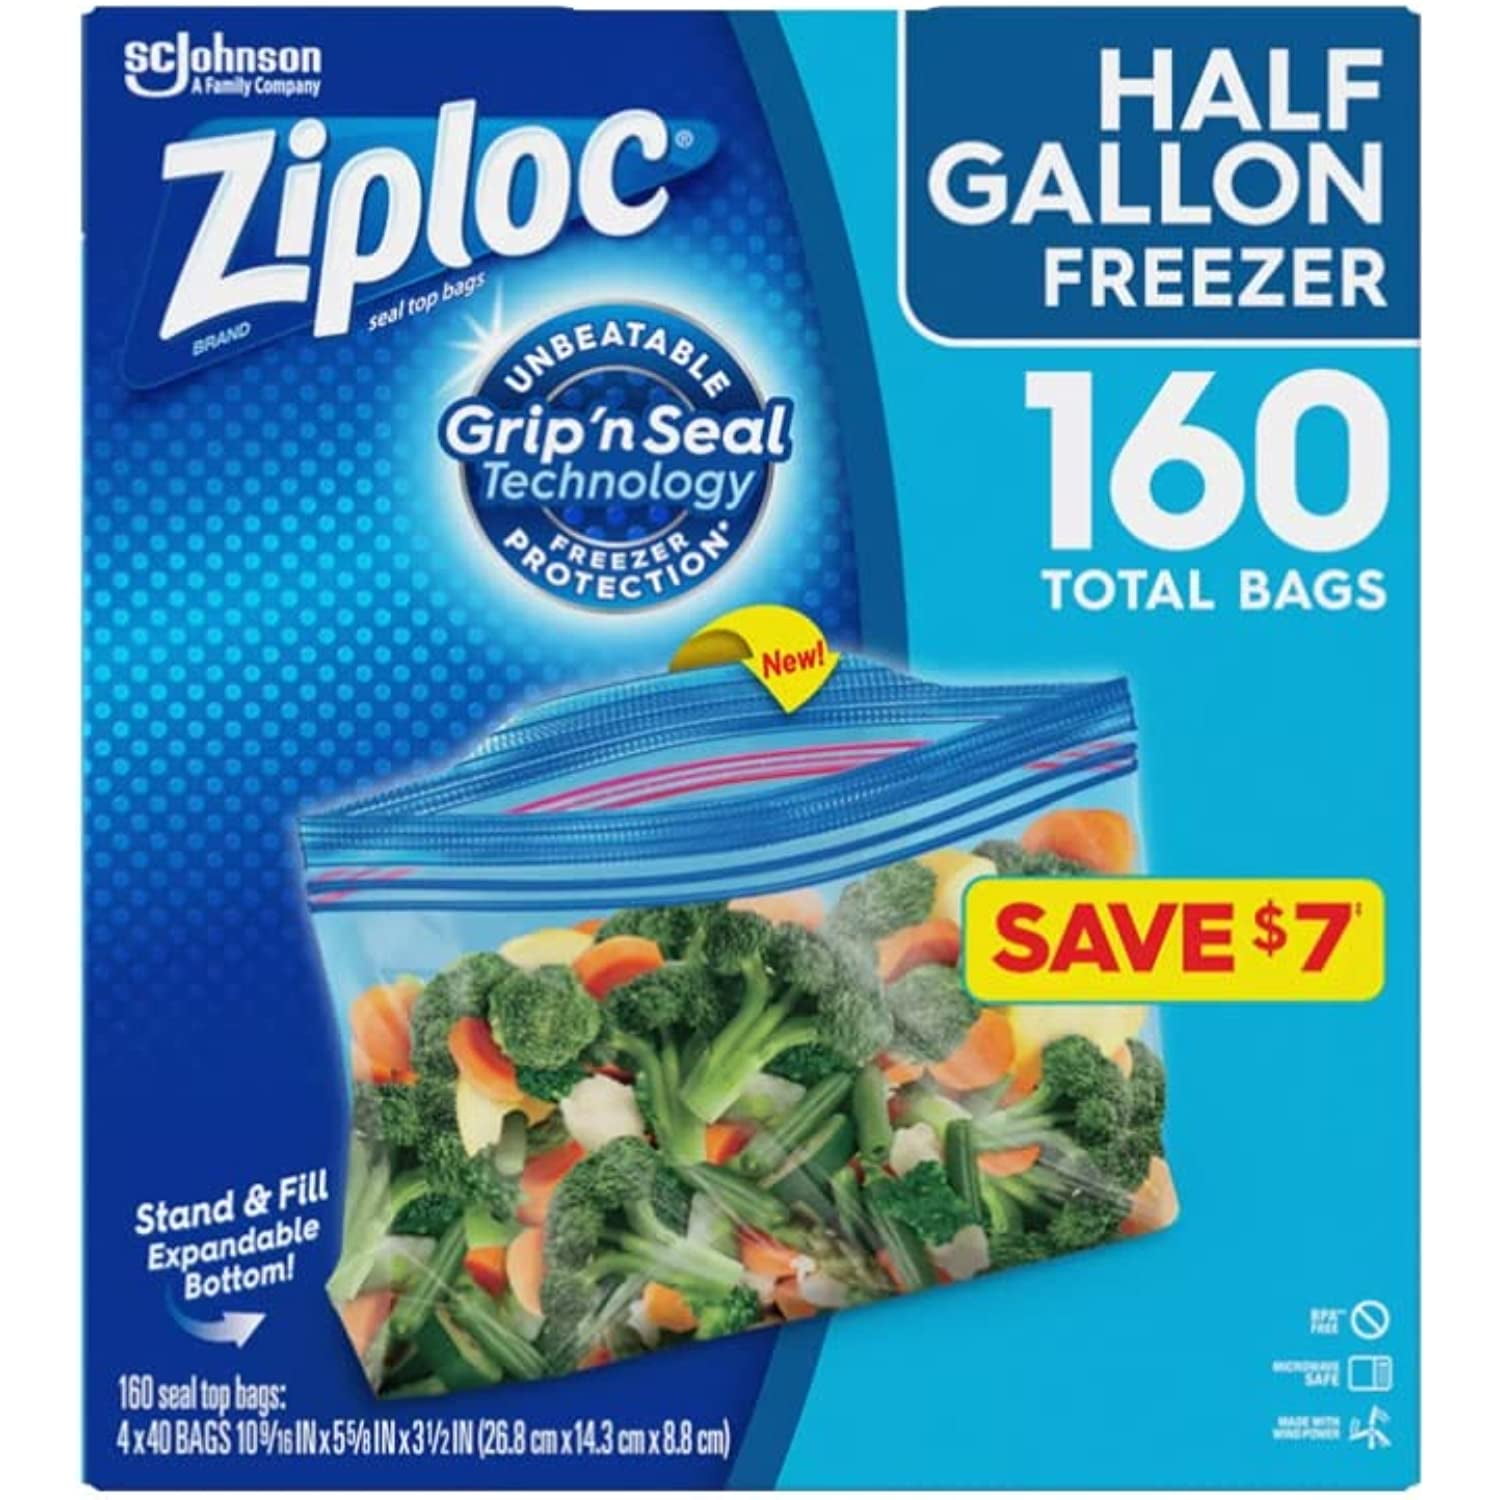 Ziploc Seal Top Bags, Freezer, Pint